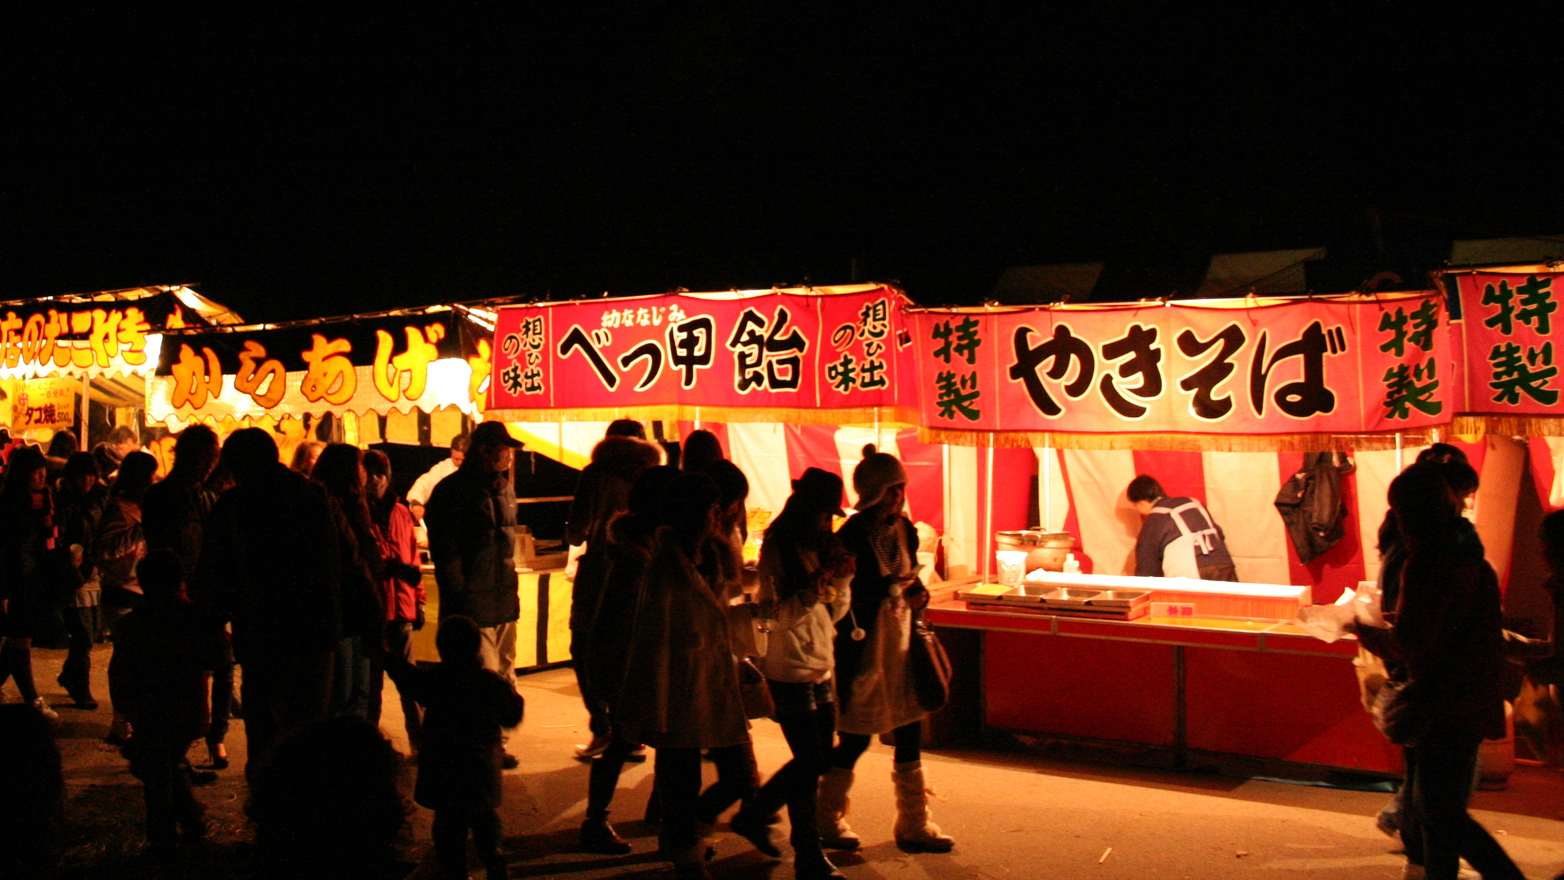 các quầy "Yatai" là các quầy hàng ngoài trời bán nhiều loại thực phẩm dễ chế biến và dễ ăn cho đám đông người tham gia lễ hội. 